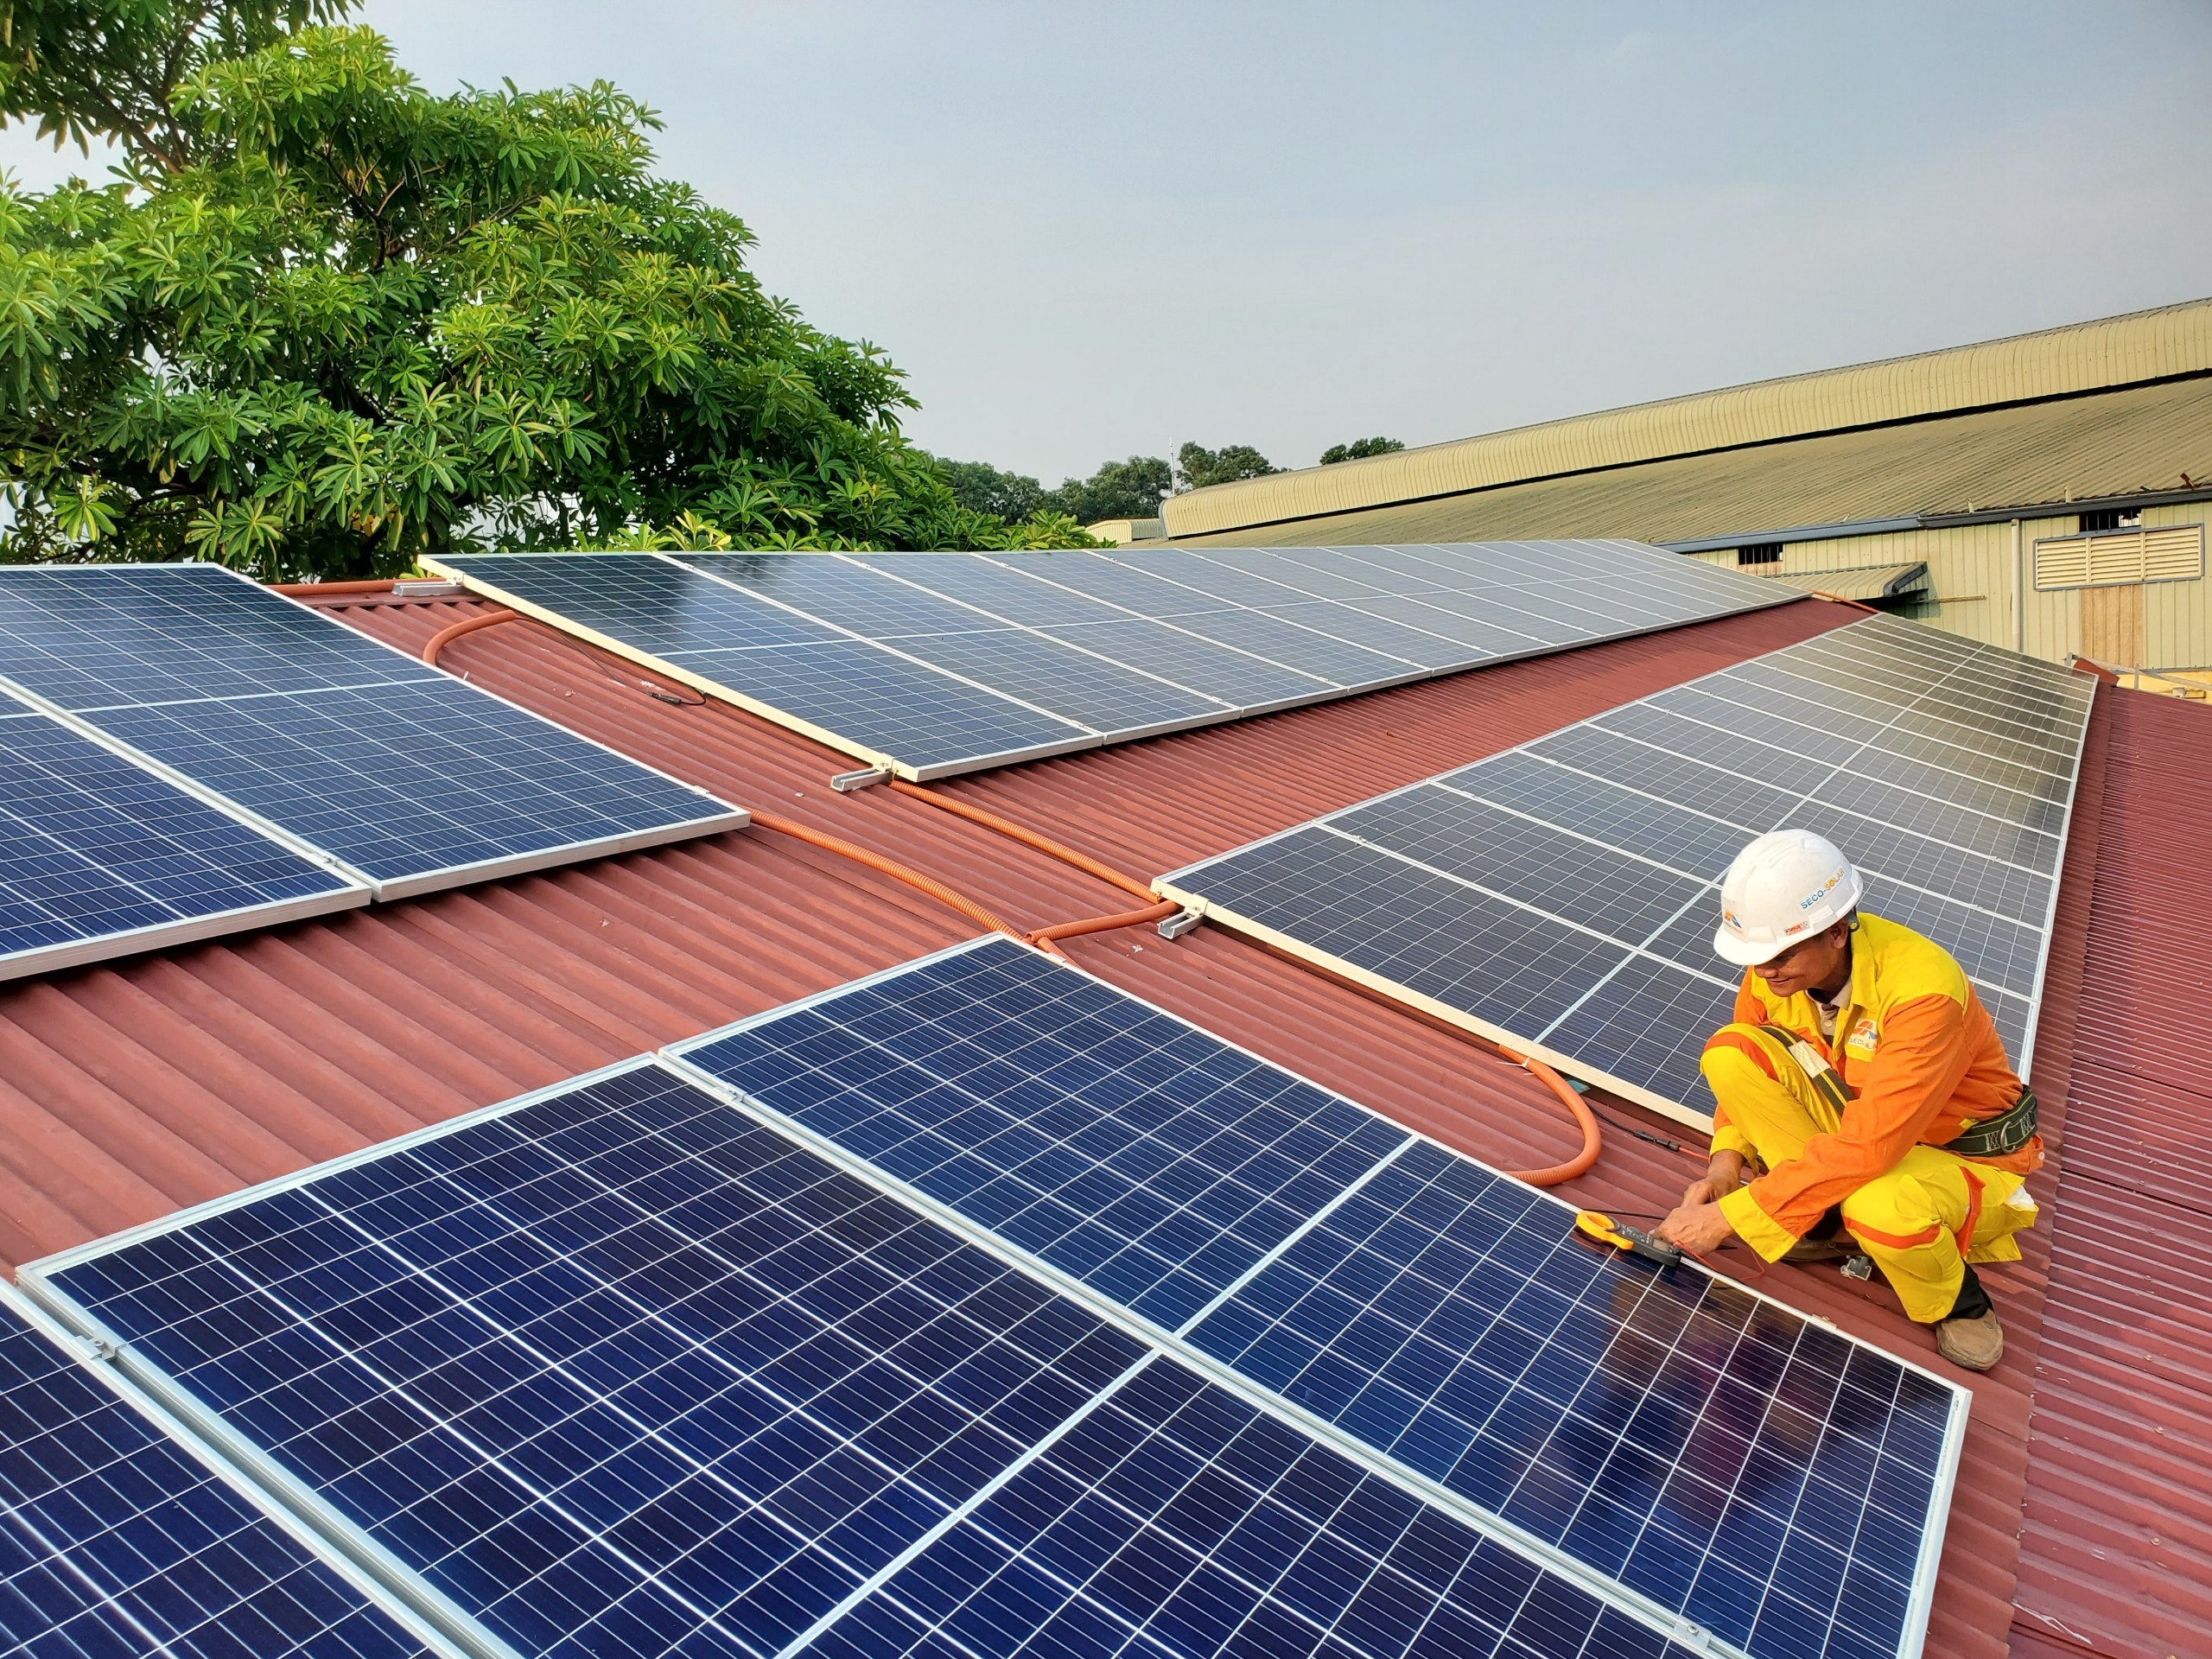 Installer panneaux solaires sur le toit d'une maison